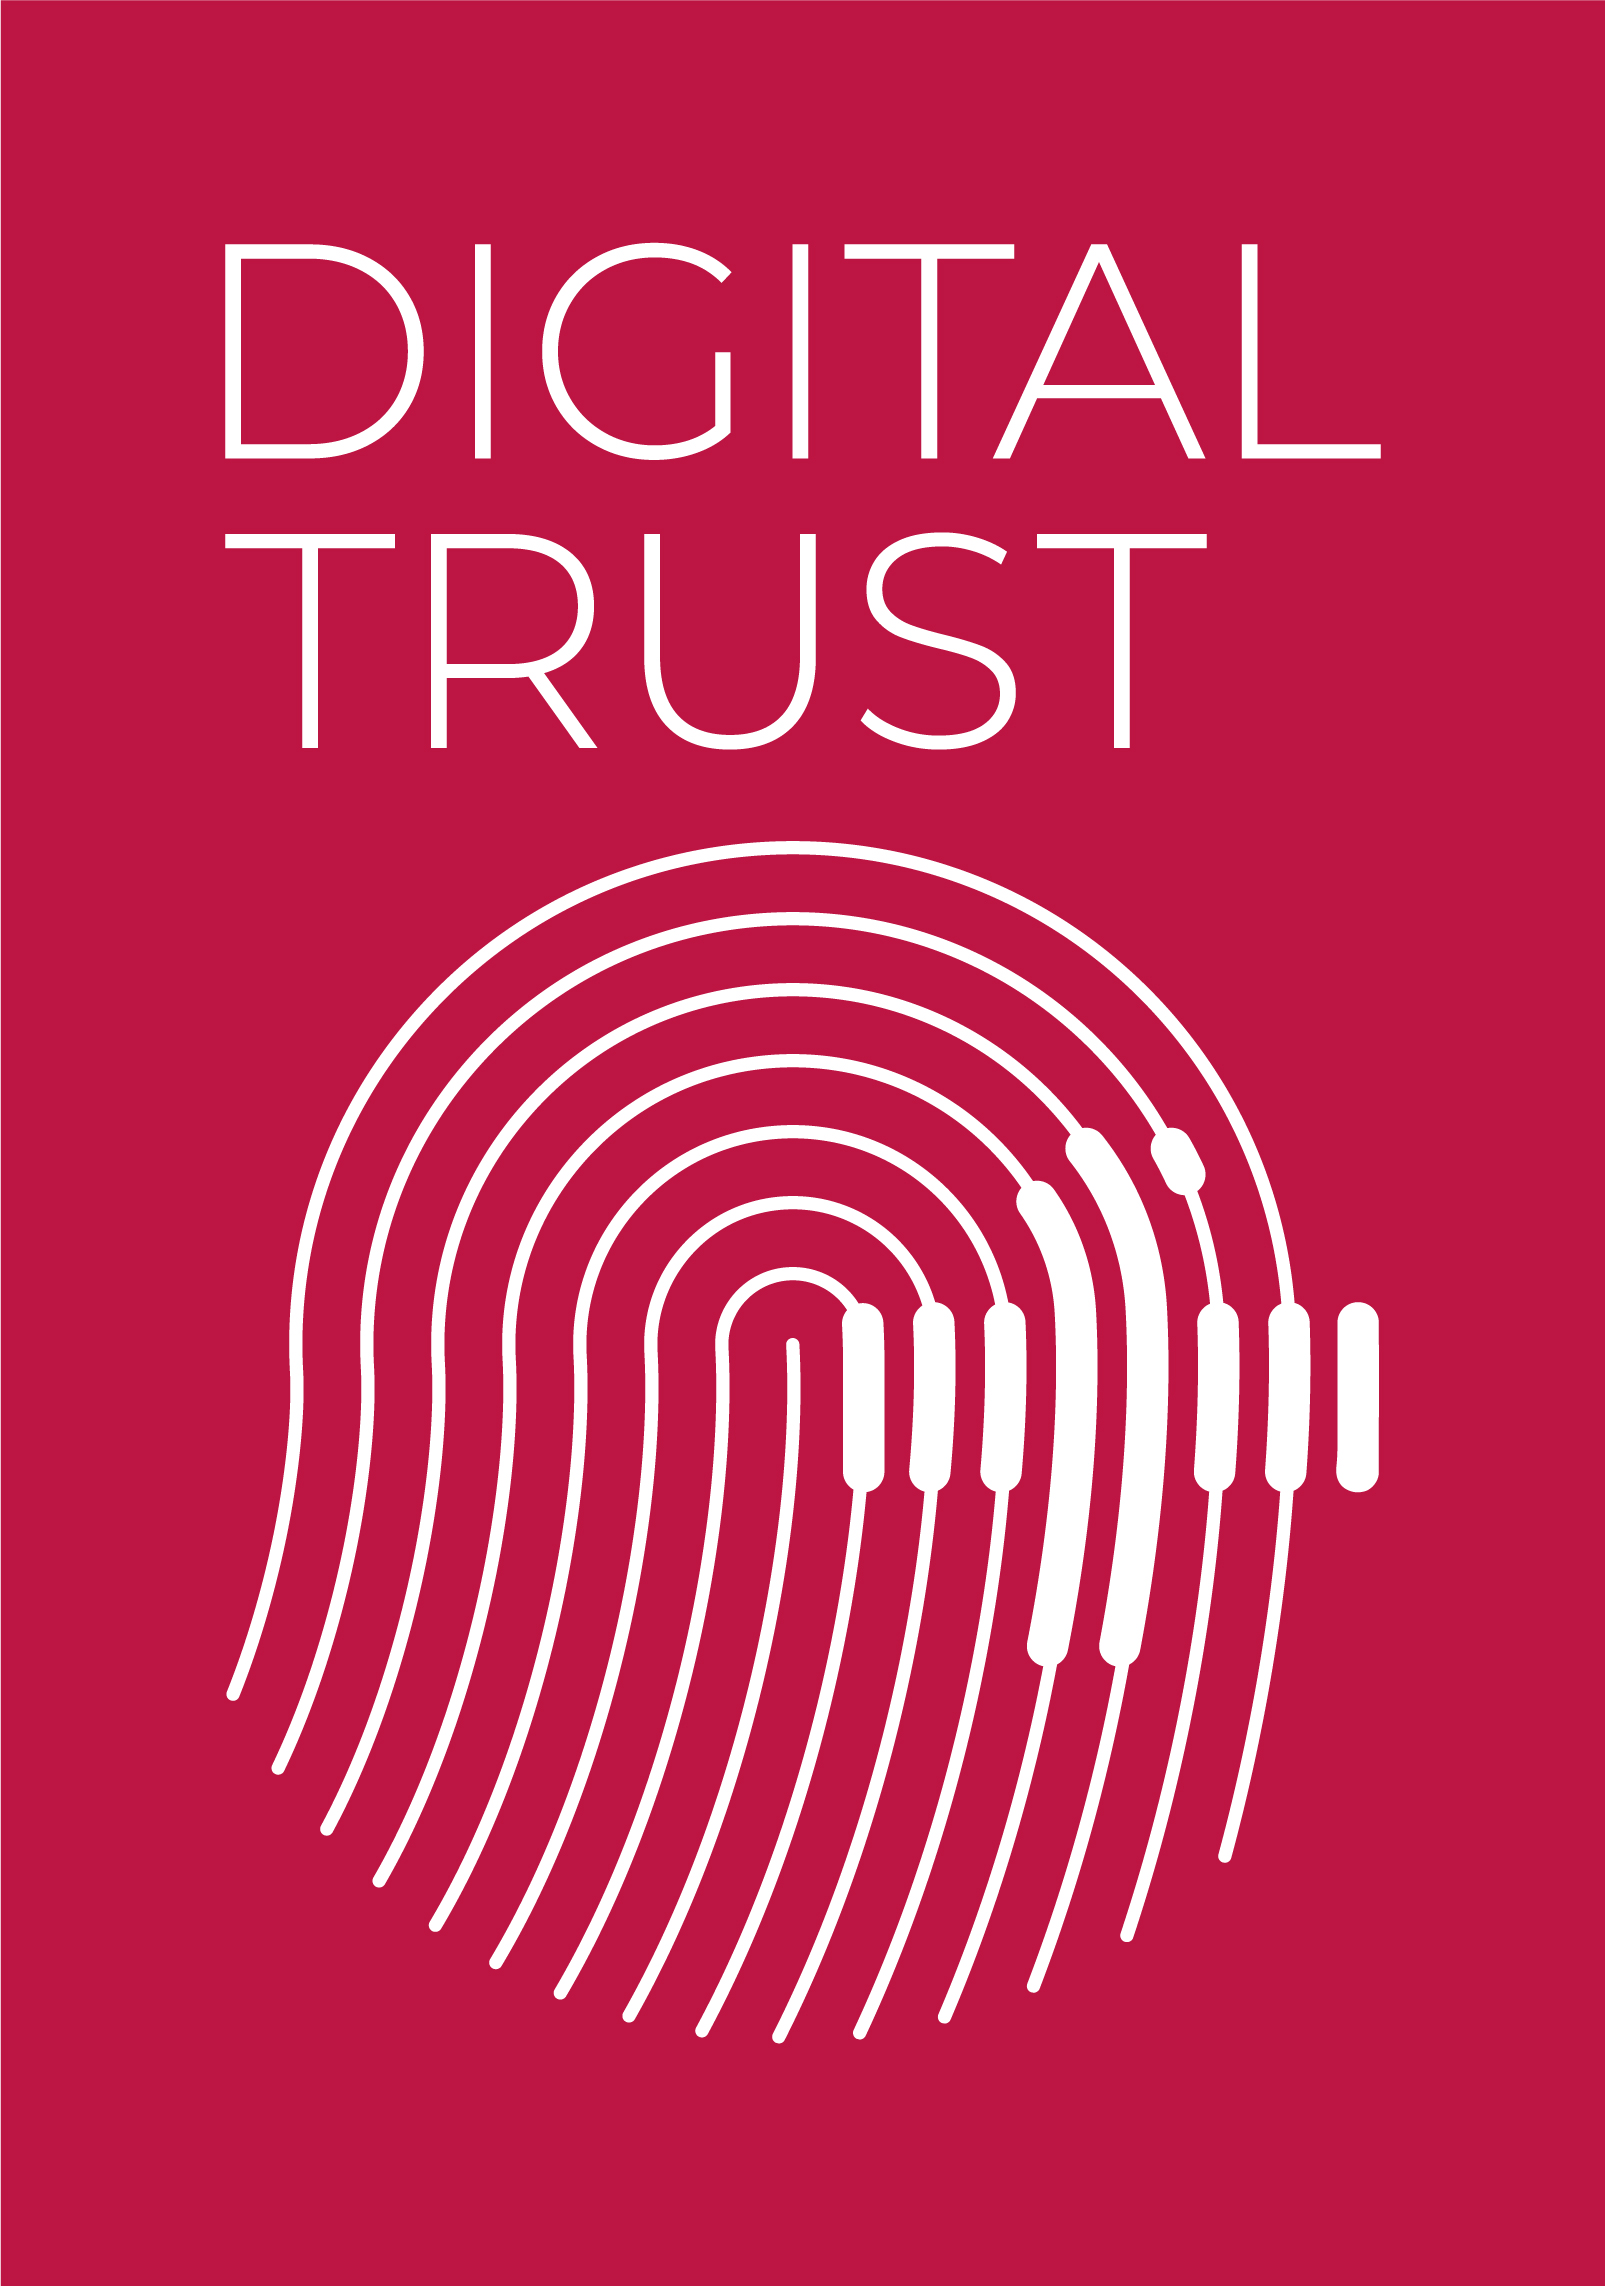 "Digital Trust Label", në format vertikal drejtkëndor, i lançuar në Zvicër për të kërkuar llogaridhënie në fushën dixhitale